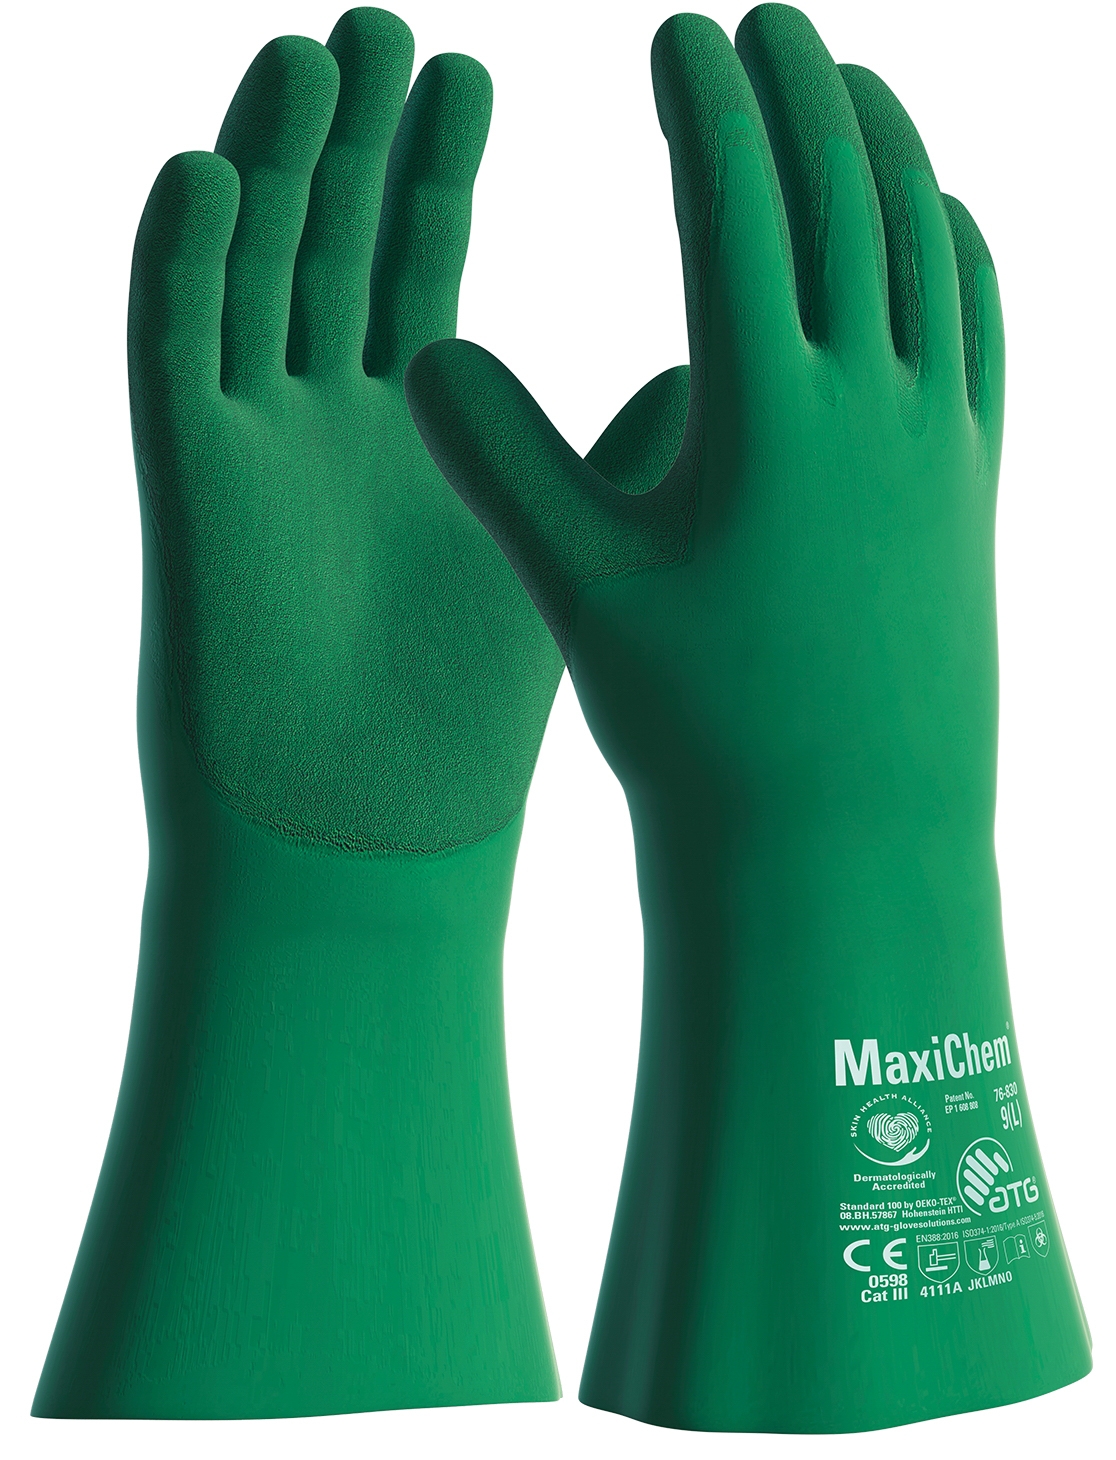 MaxiChem® Chemikalienschutz-Handschuhe (76-830) in Grün, Größe 8